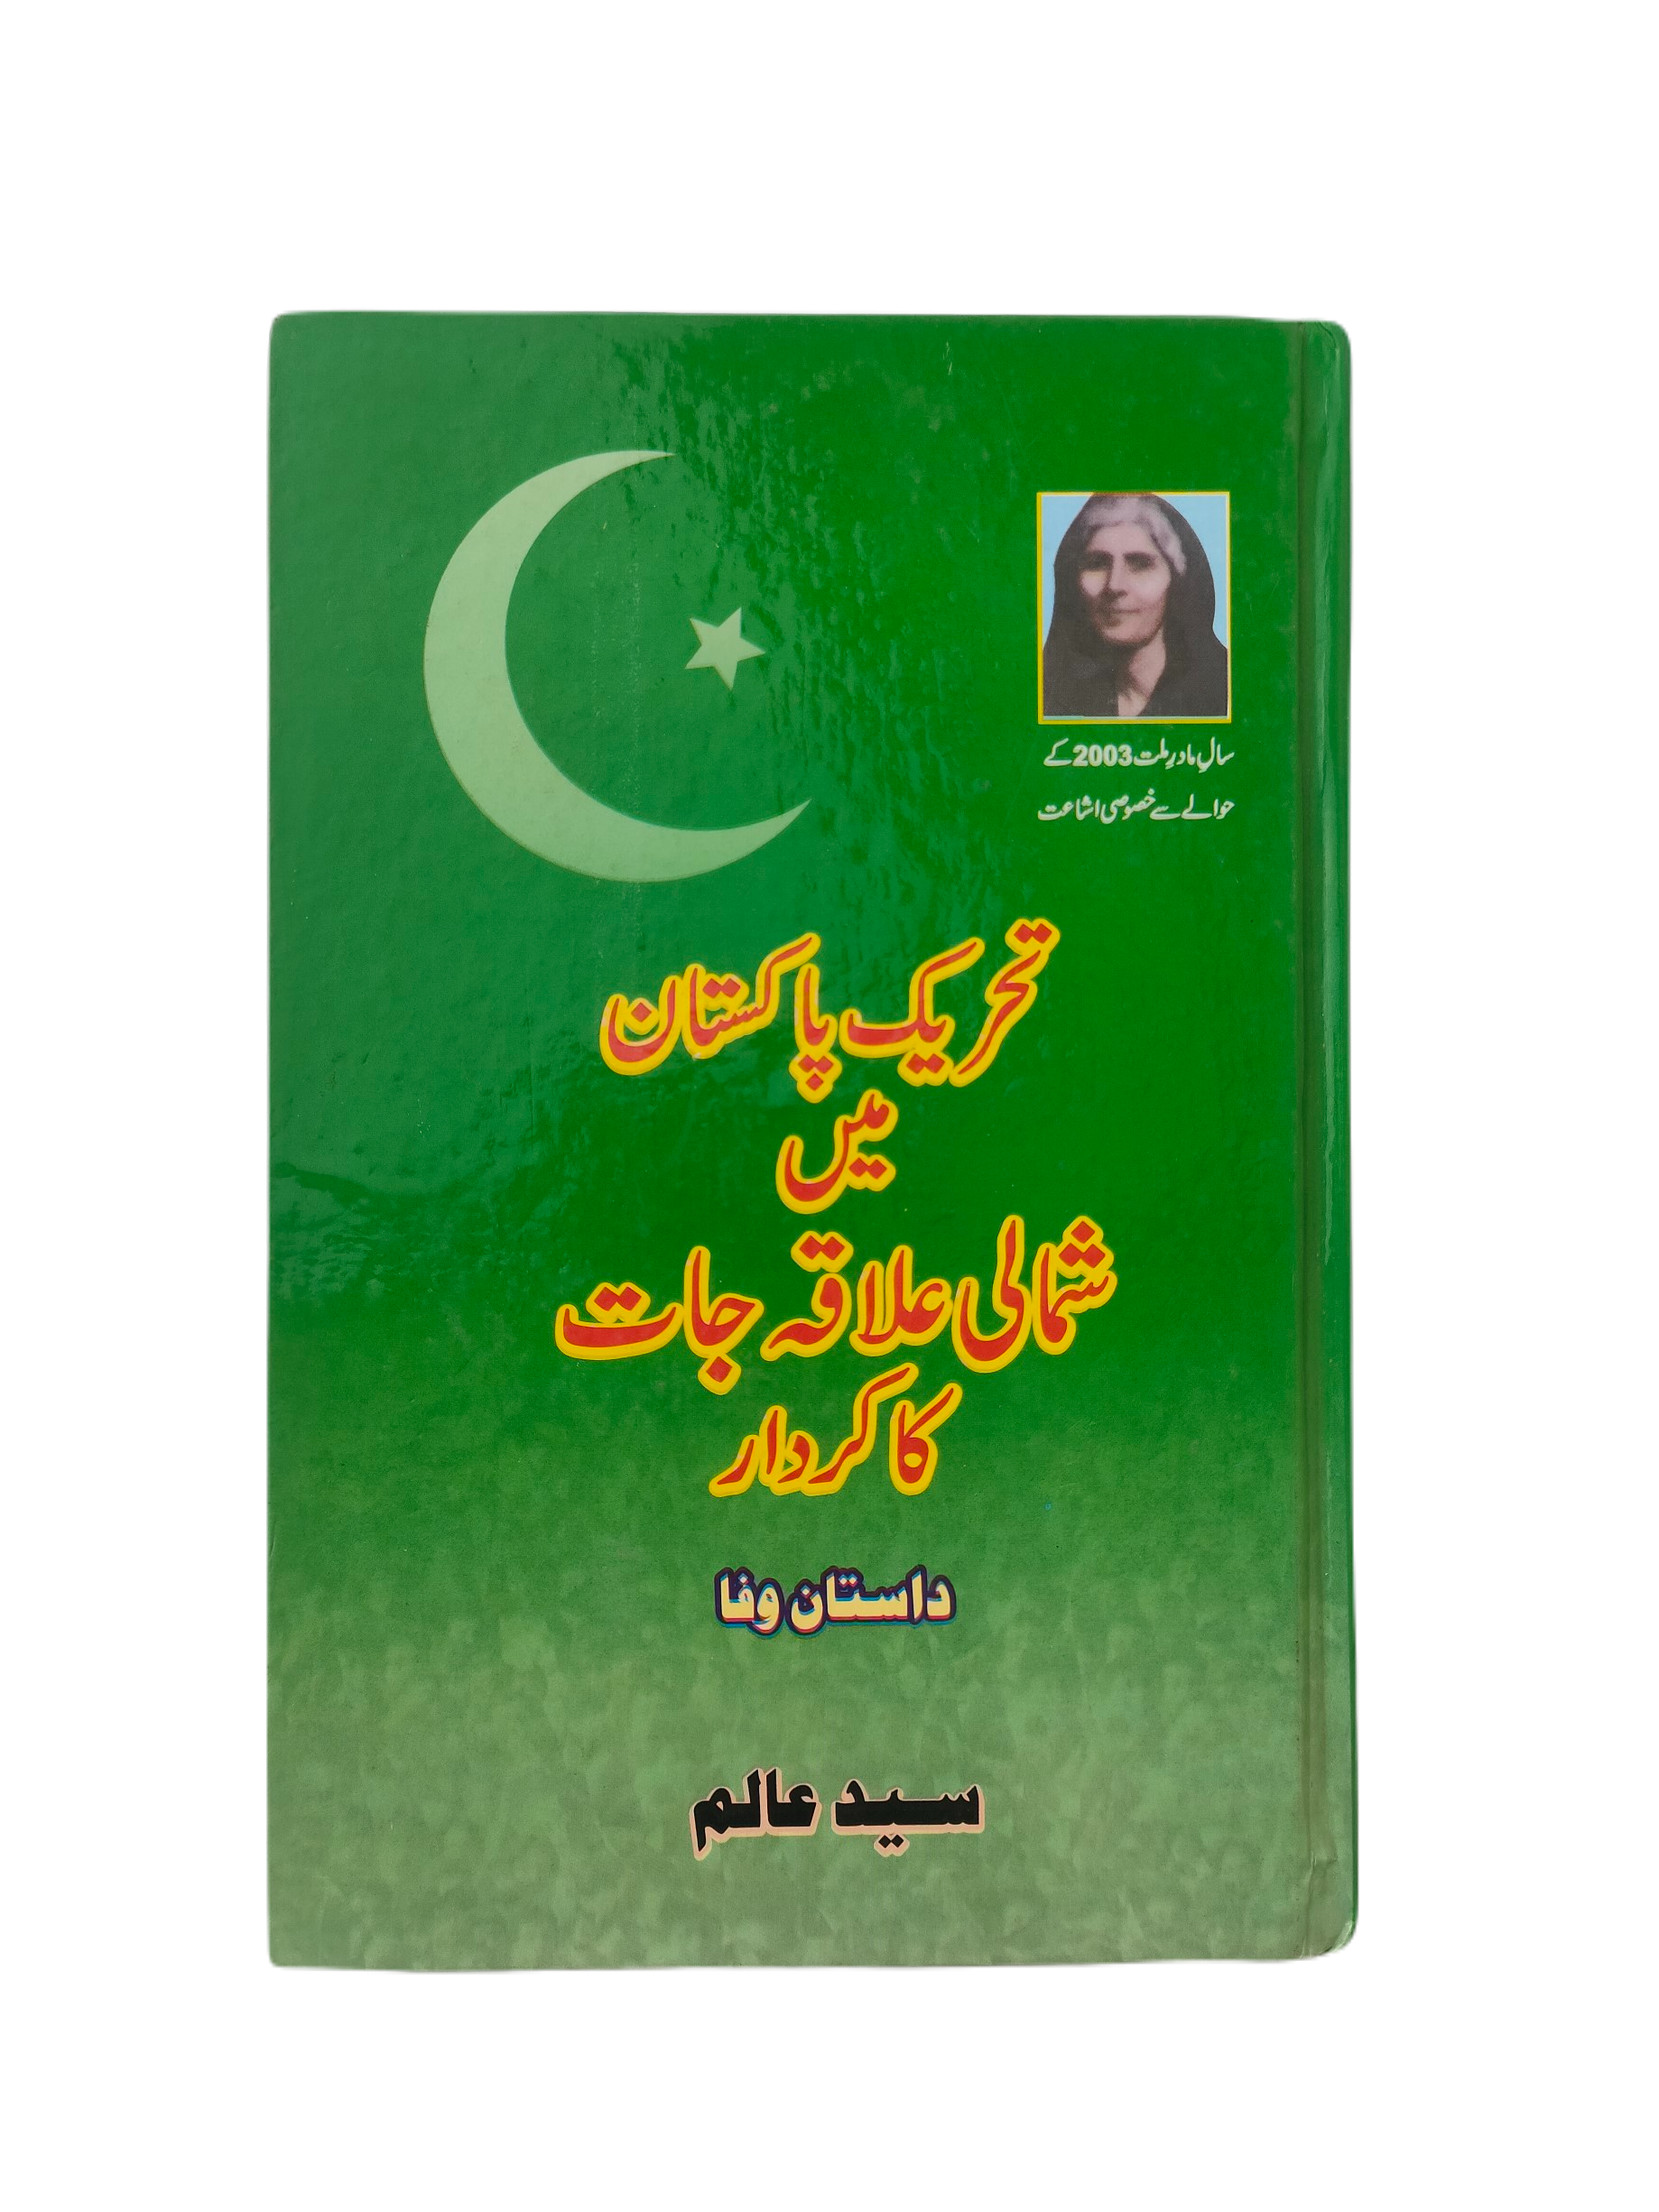 Tehreek-e-Pakistan Mein Shumali Ilaqajat Ka Kardar (The Role of Northern Regions in the Pakistan Movement)